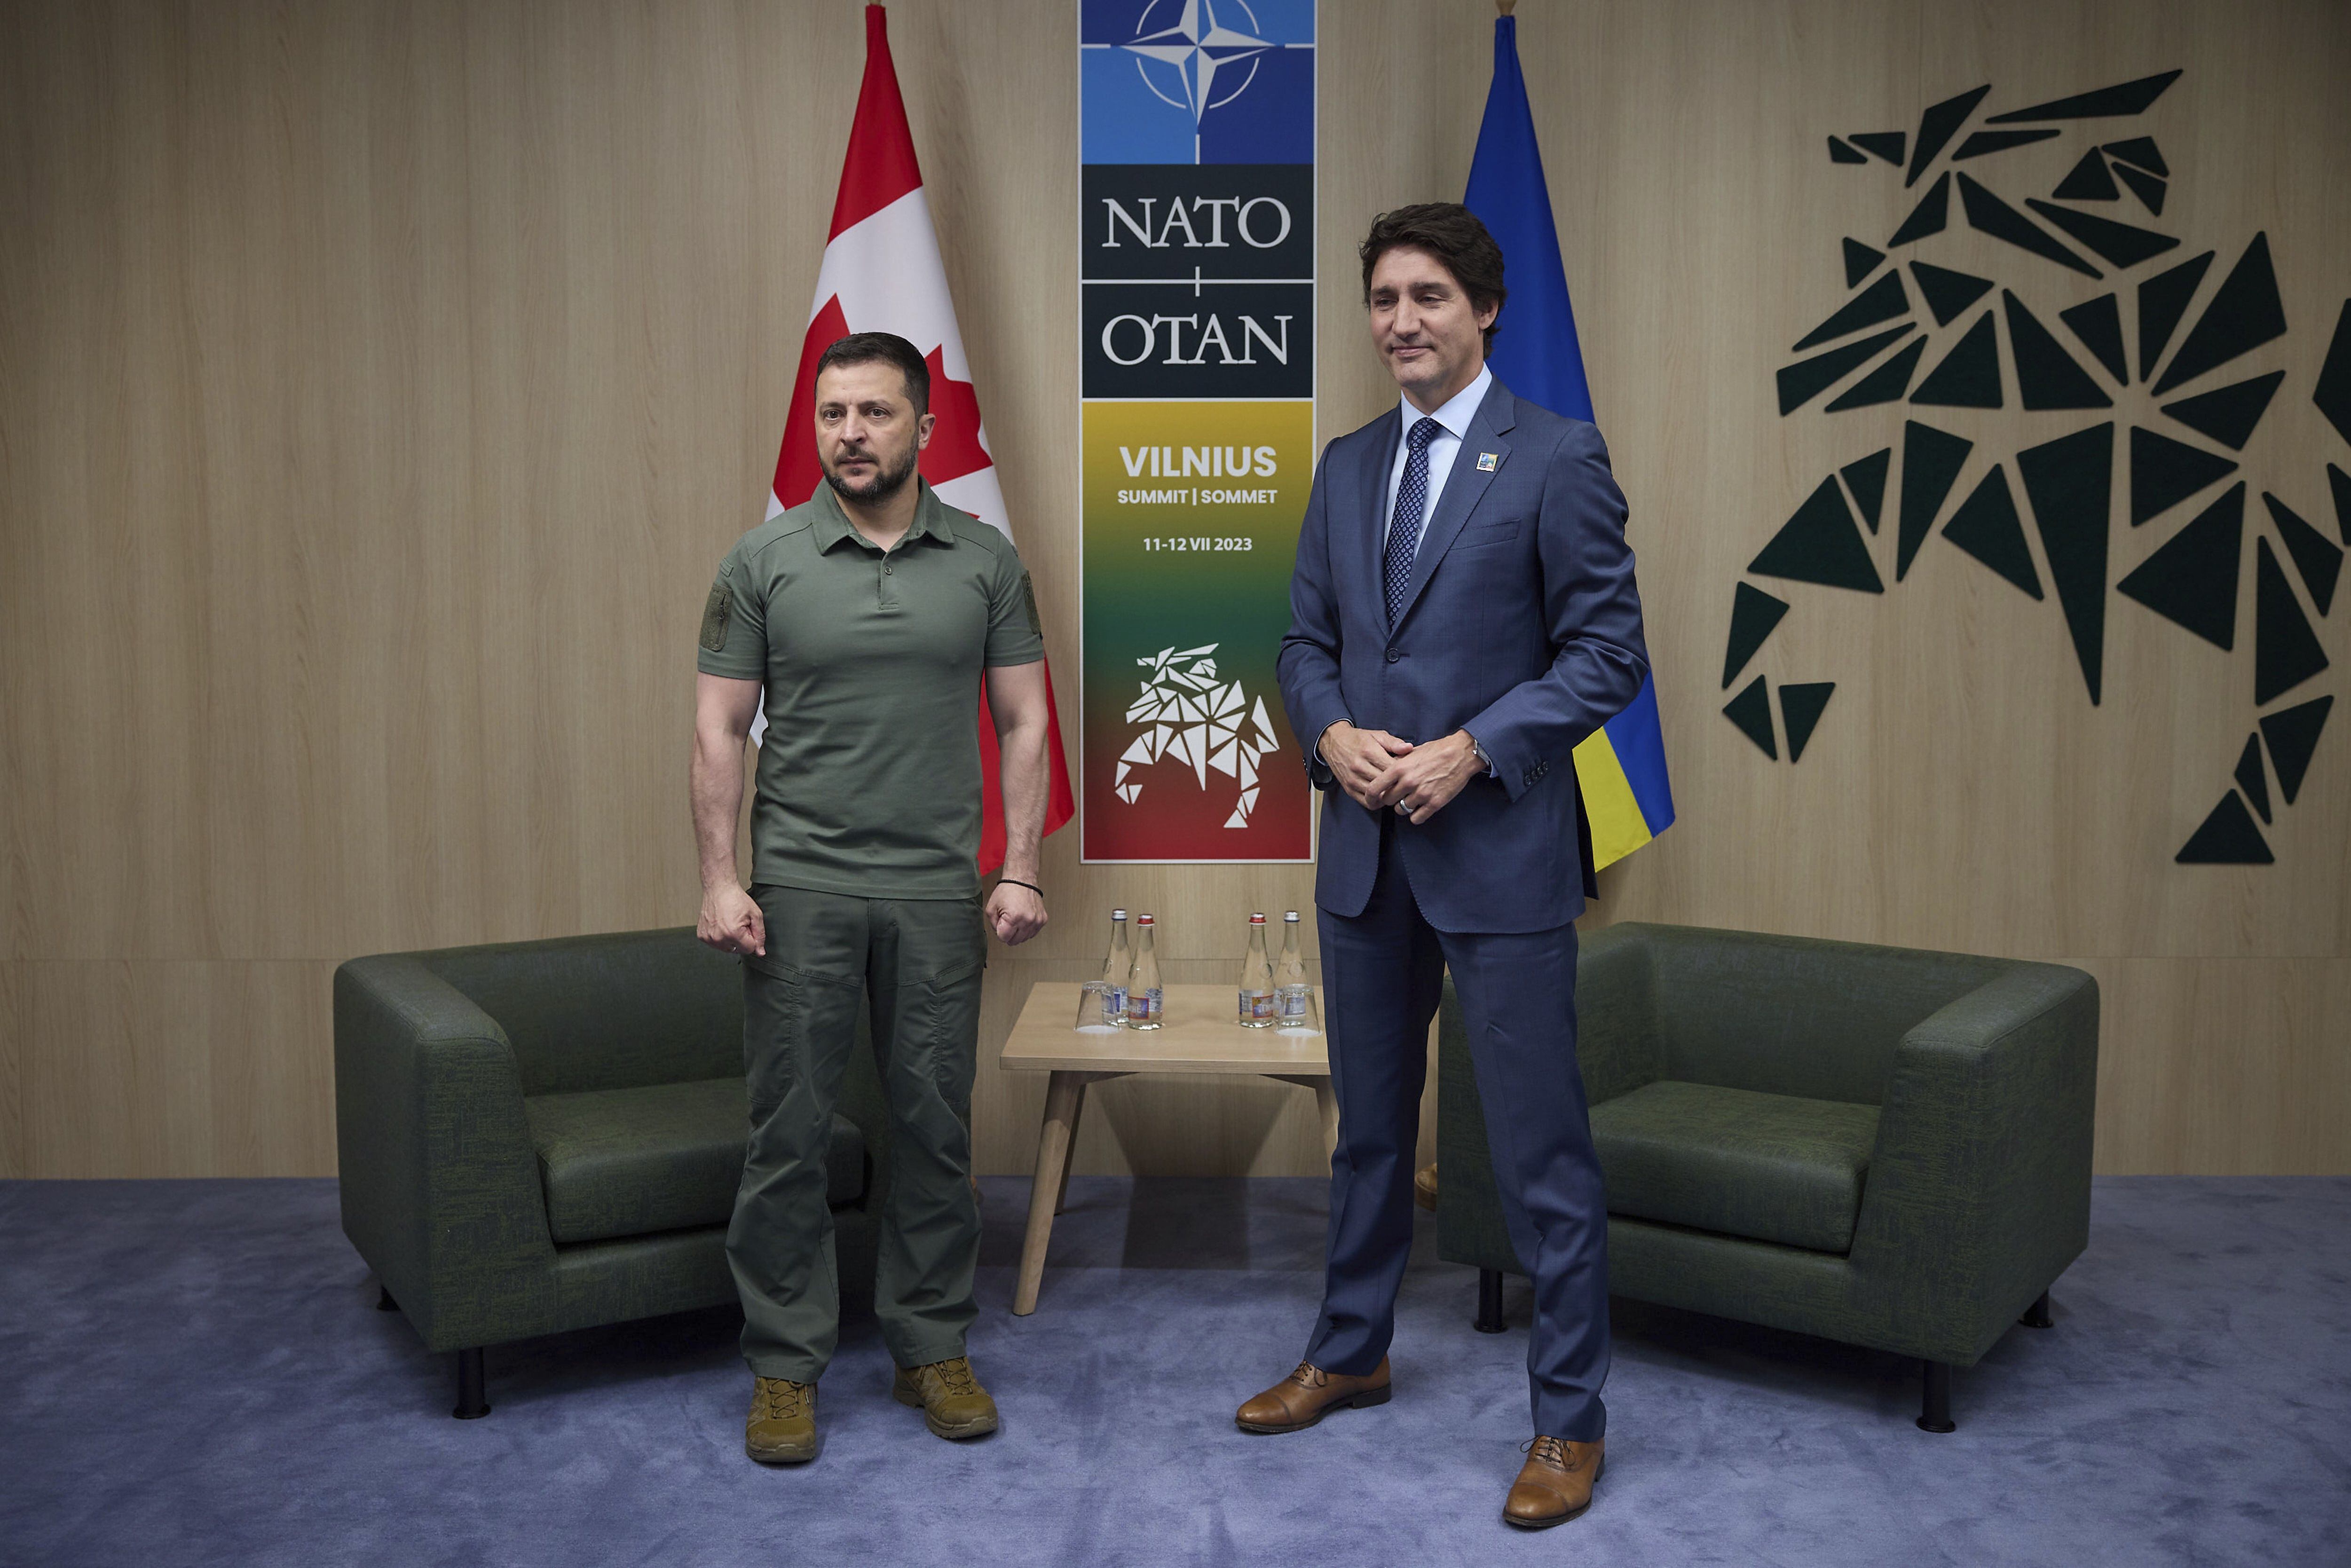 Zelensky fue recibido por el primer ministro canadiense, Justin Trudeau, quien le reiteró su apoyo incondicional a la soberanía y la democracia de Ucrania, así como a los valores que comparten ambos países. (Europa Press)